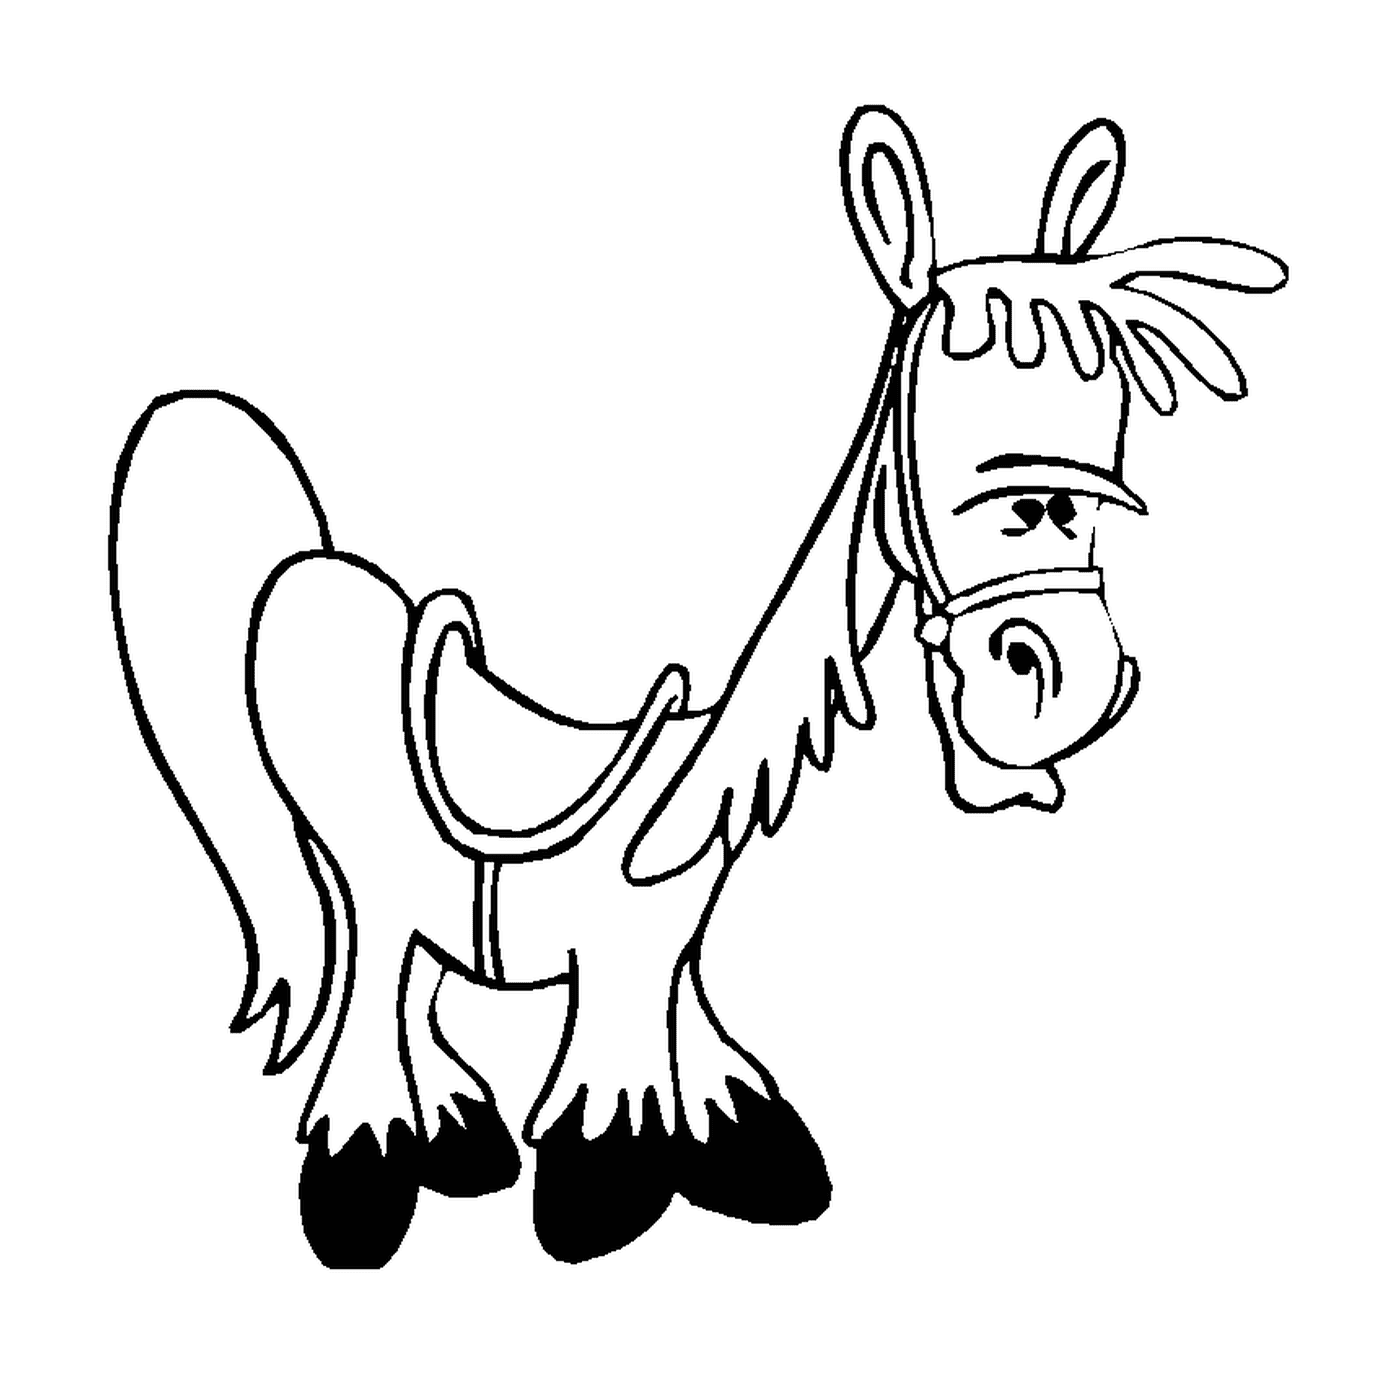  Ilustração divertida de um cavalo com um arnês 